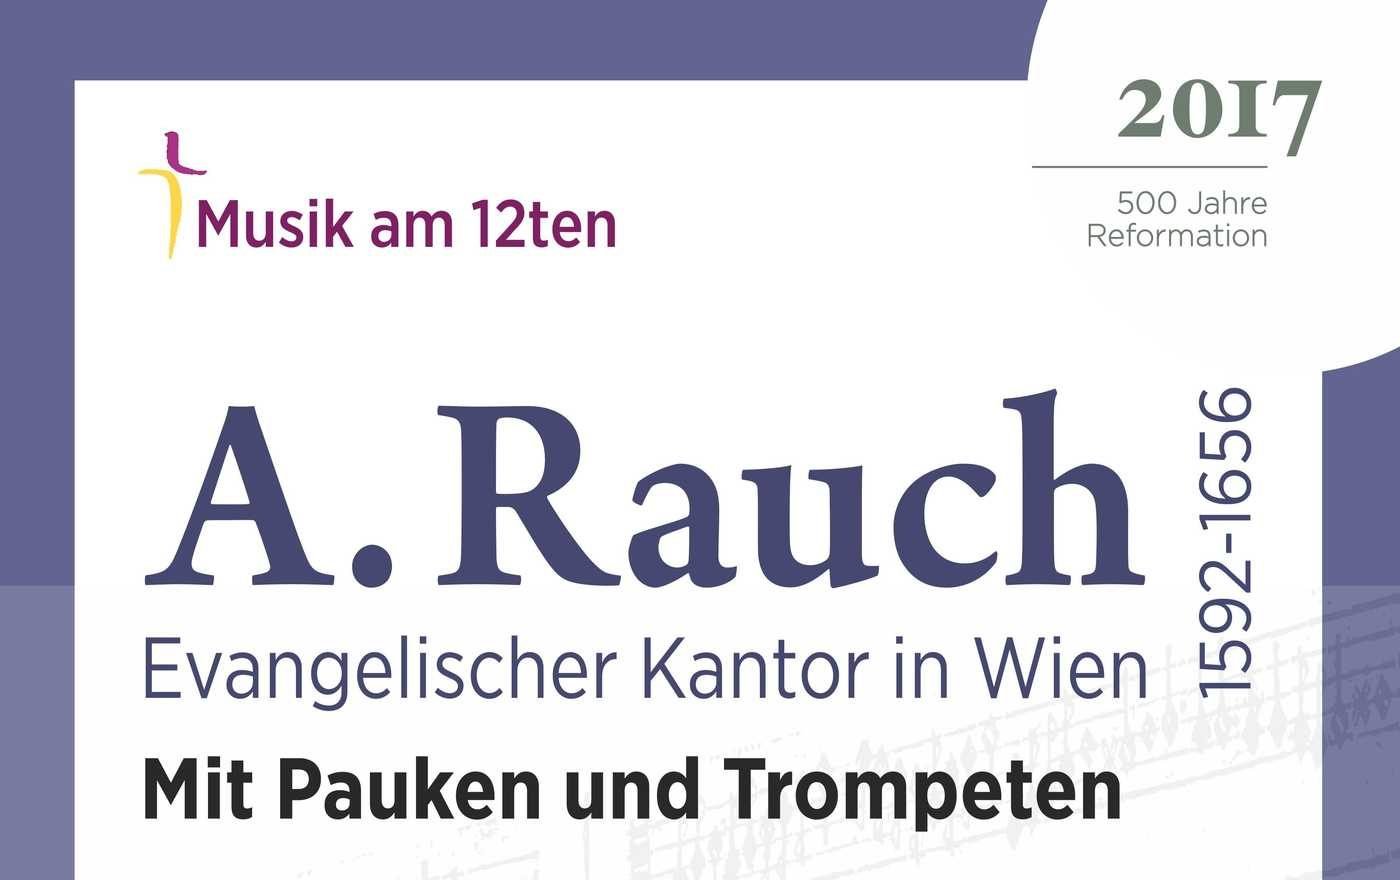 „Mit Pauken und Trompeten“ wird am 1. Mai 2017 um 19.30 Uhr in der Lutherischen Stadtkirche Wien zur Aufführung gebracht.